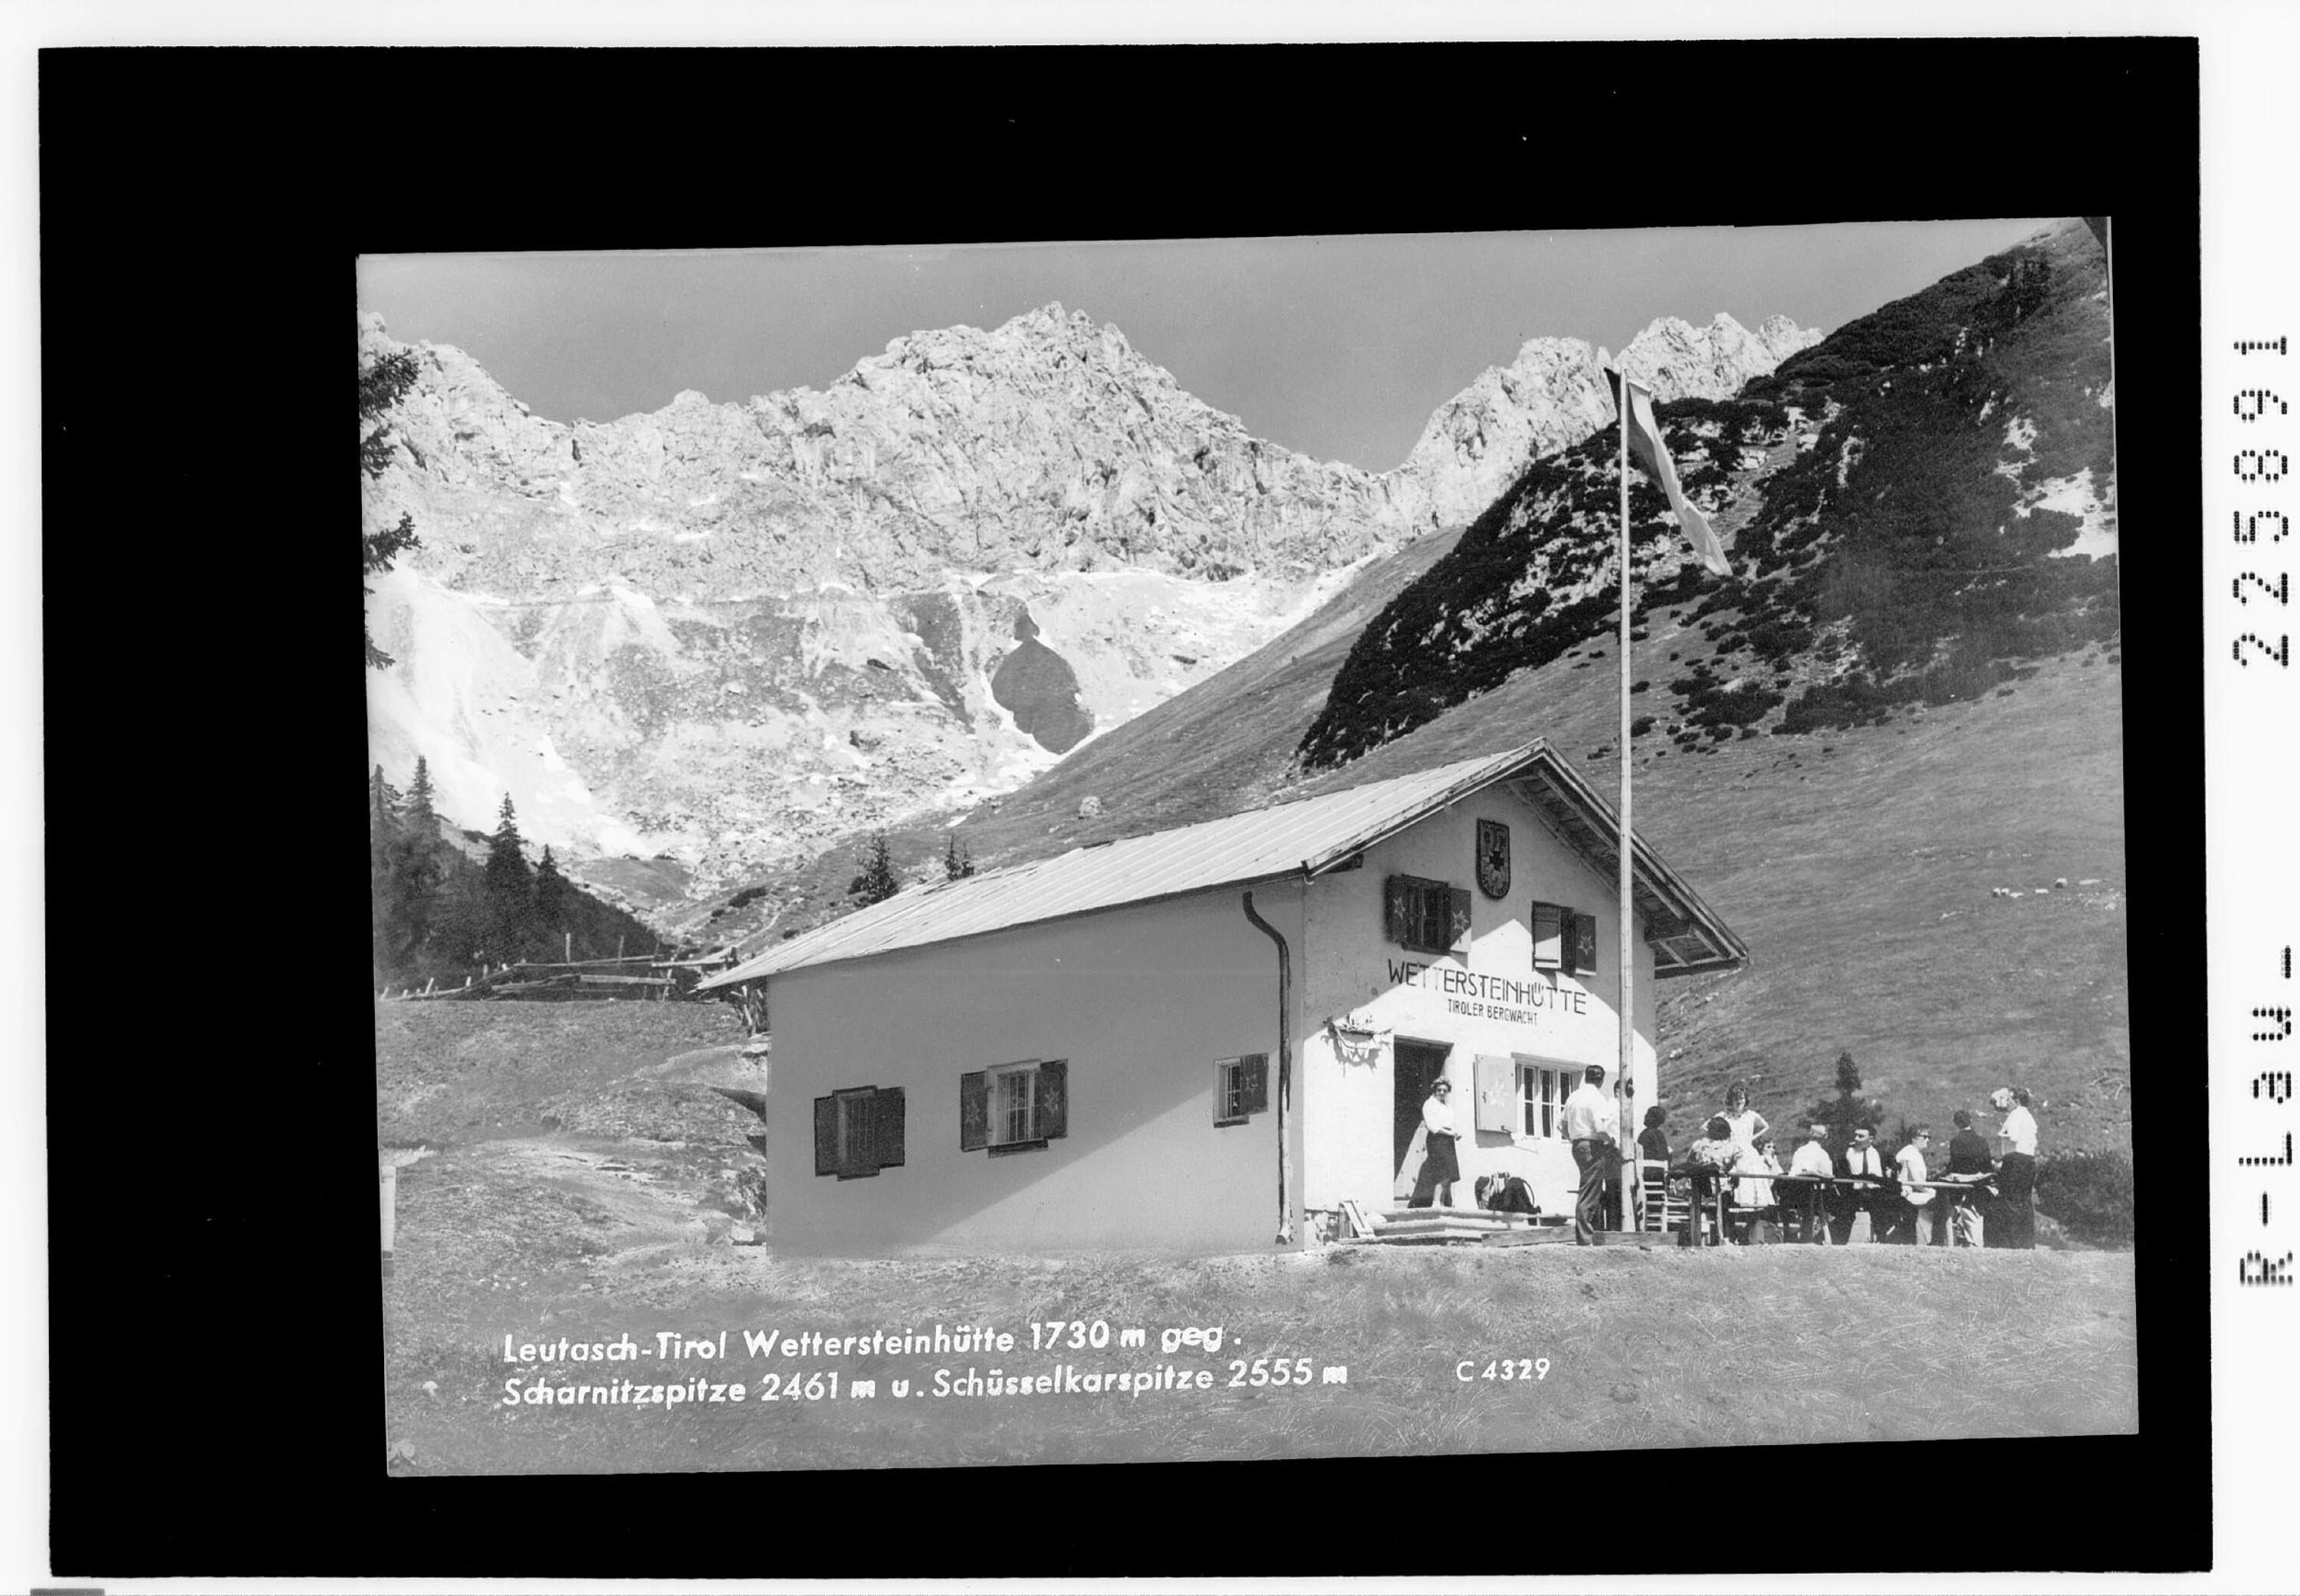 Leutasch - Tirol / Wettersteinhütte 1730 m gegen Scharnitzspitze 2461 m und Schüsselkarspitze 2555 m></div>


    <hr>
    <div class=